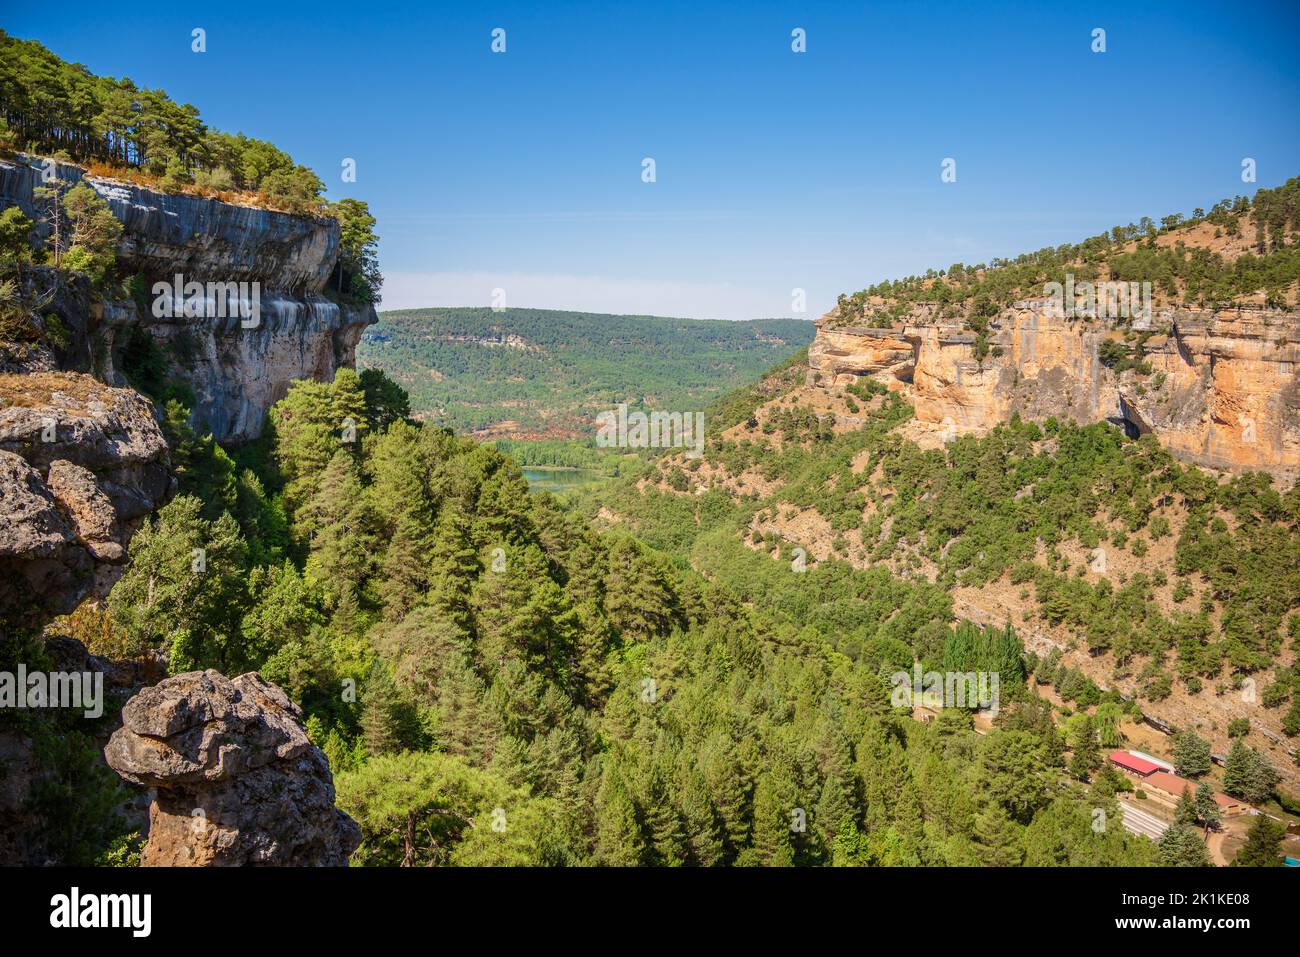 Paysage de la Serrania de Cuenca. Karst érodé par l'eau et les forêts de conifères Banque D'Images